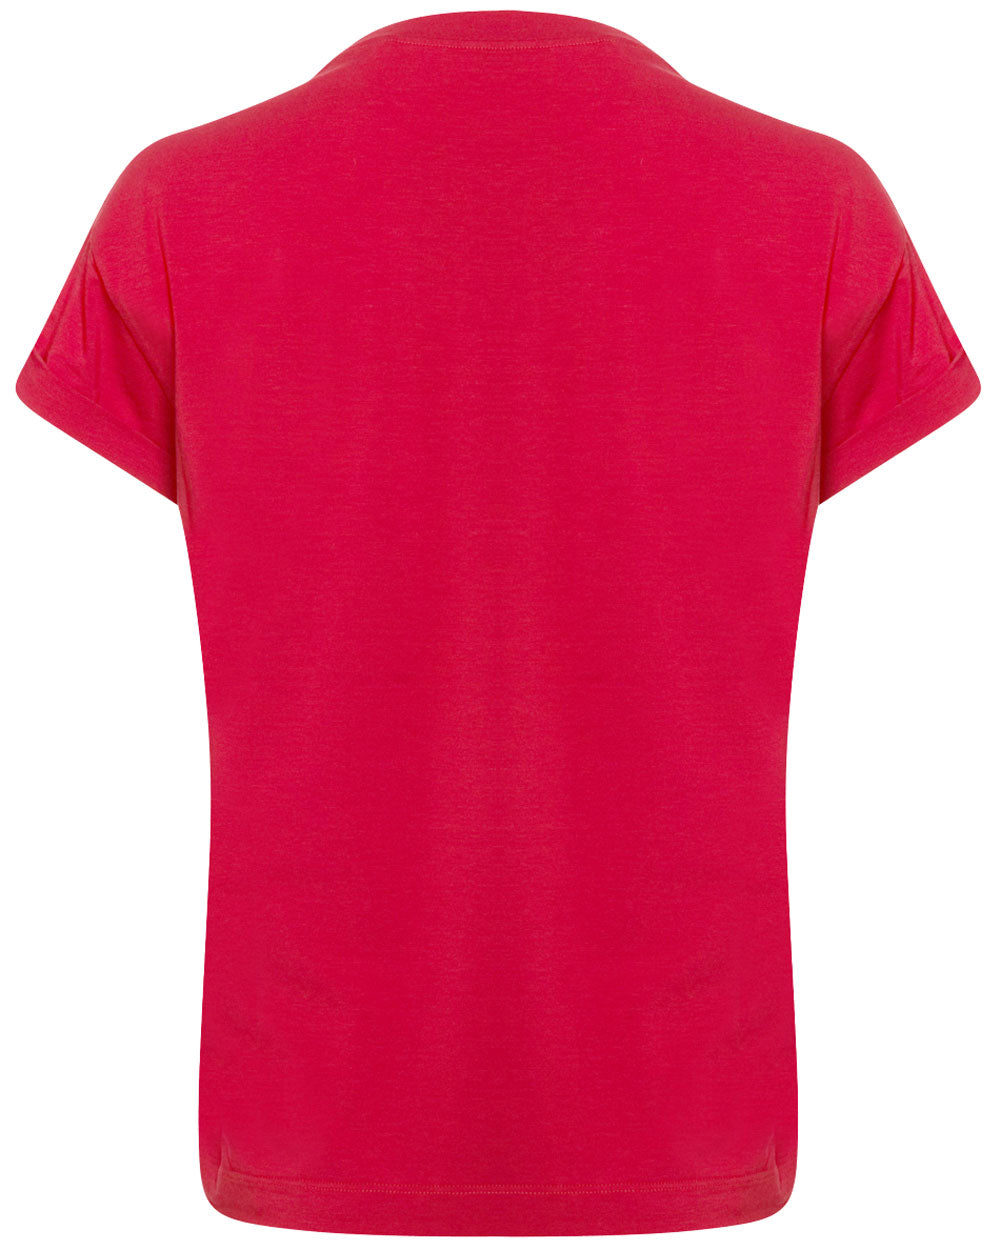 Chili Red Monili Collar T-Shirt